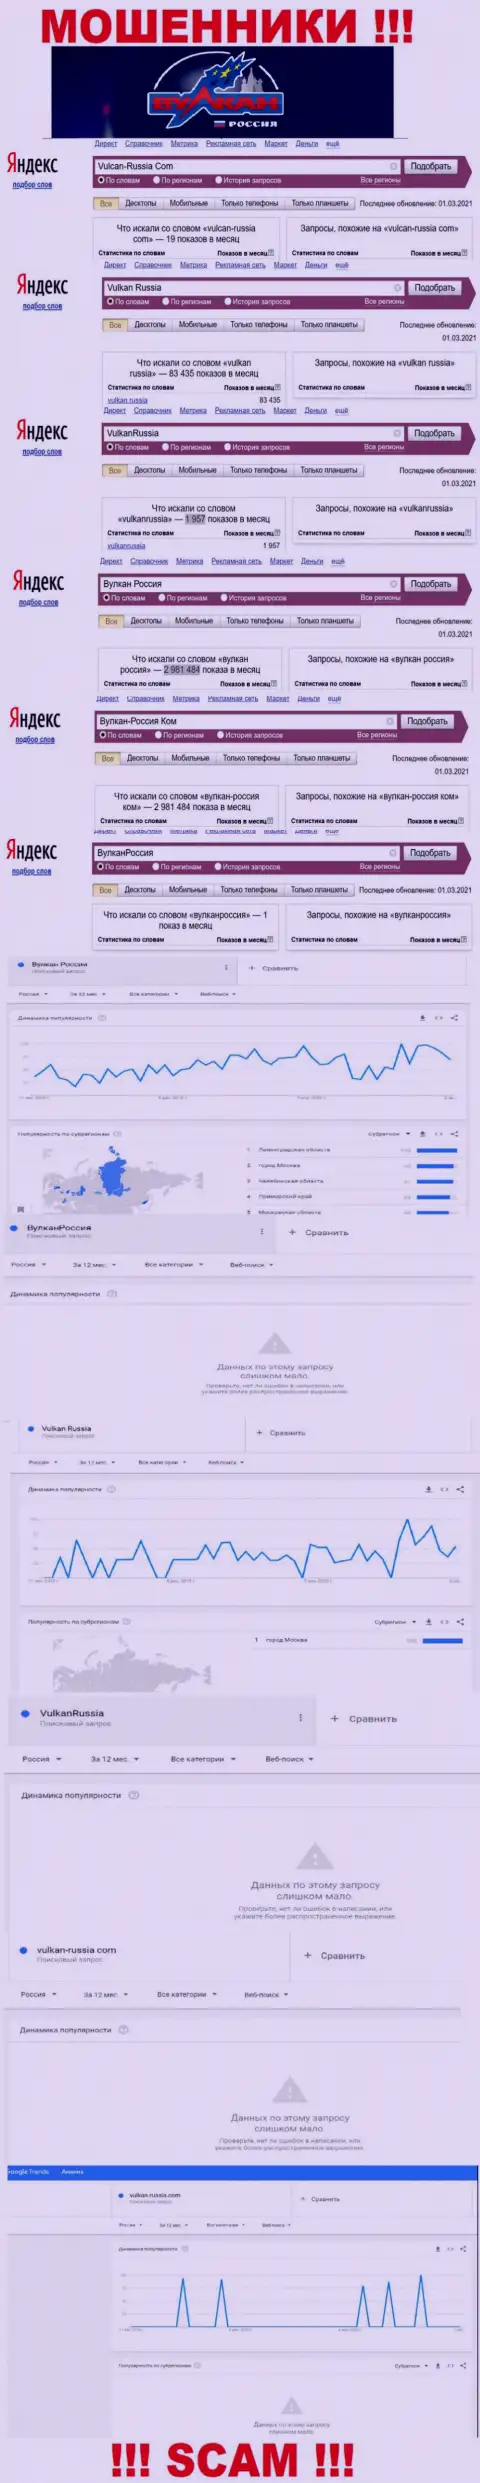 Статистические показатели числа обзоров данных о мошенниках Вулкан Россия во всемирной internet сети